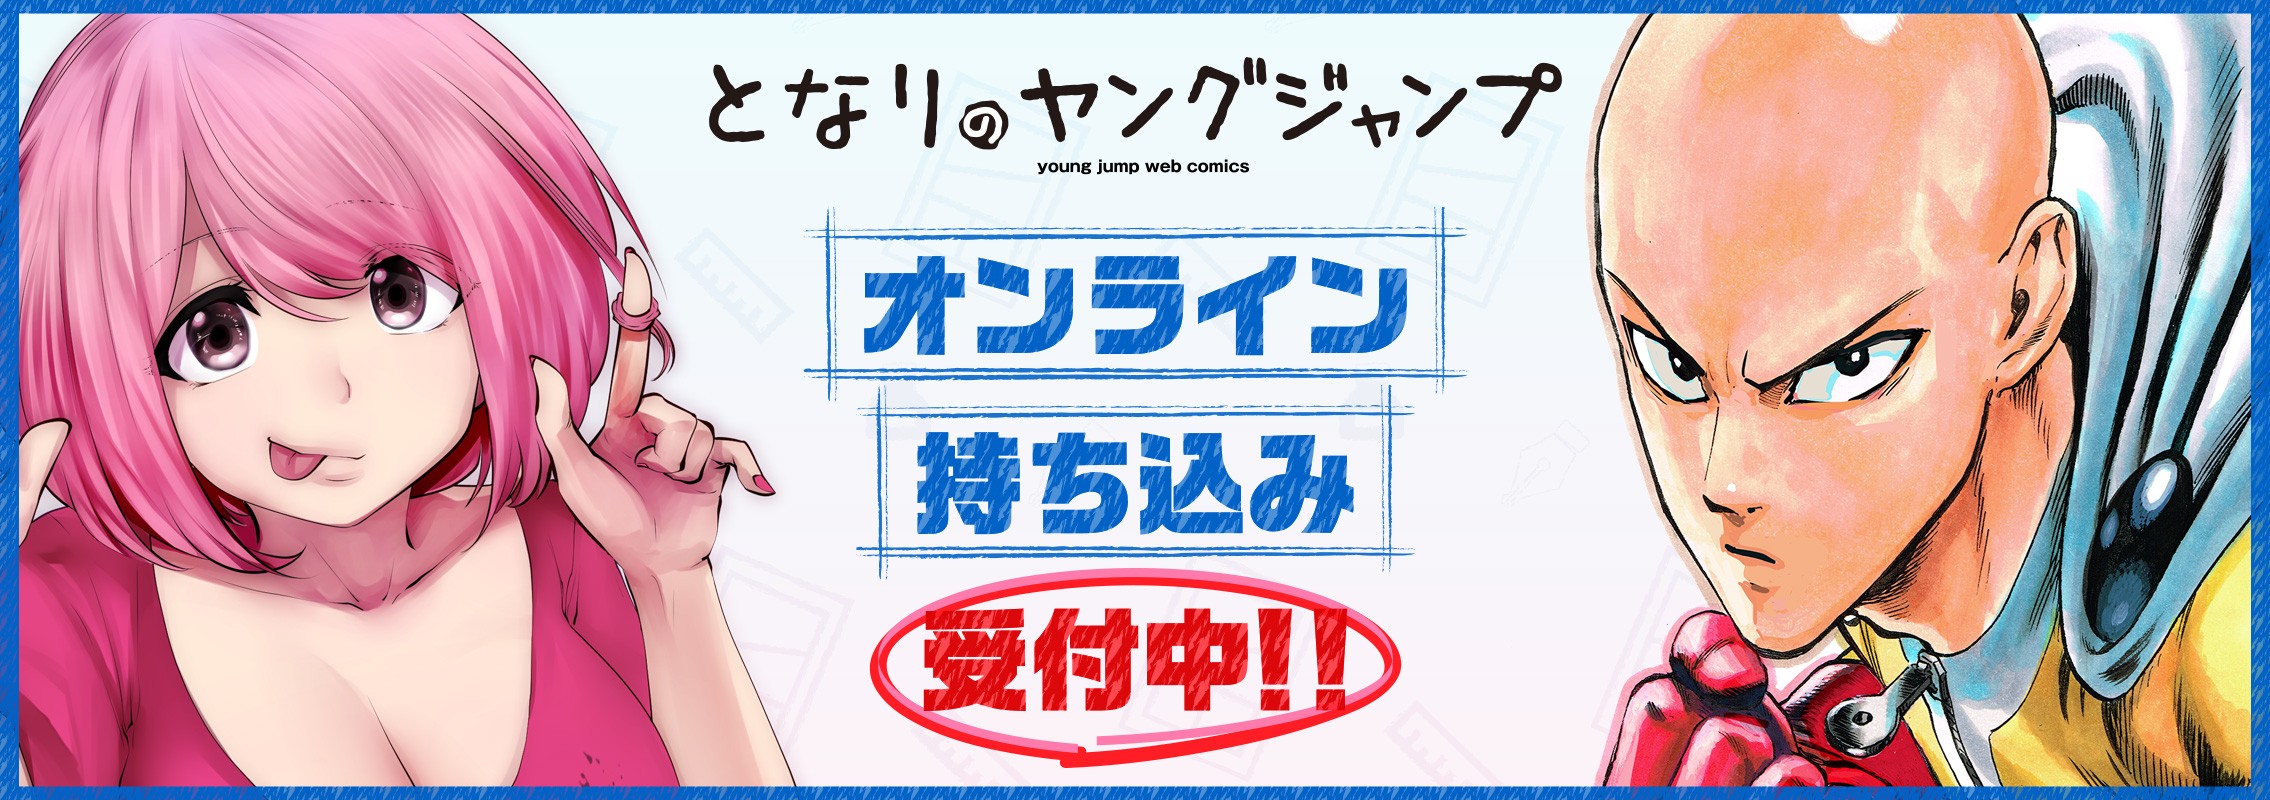 「柚子川さんは、察して欲しい。」1巻10月19日（火）発売!!